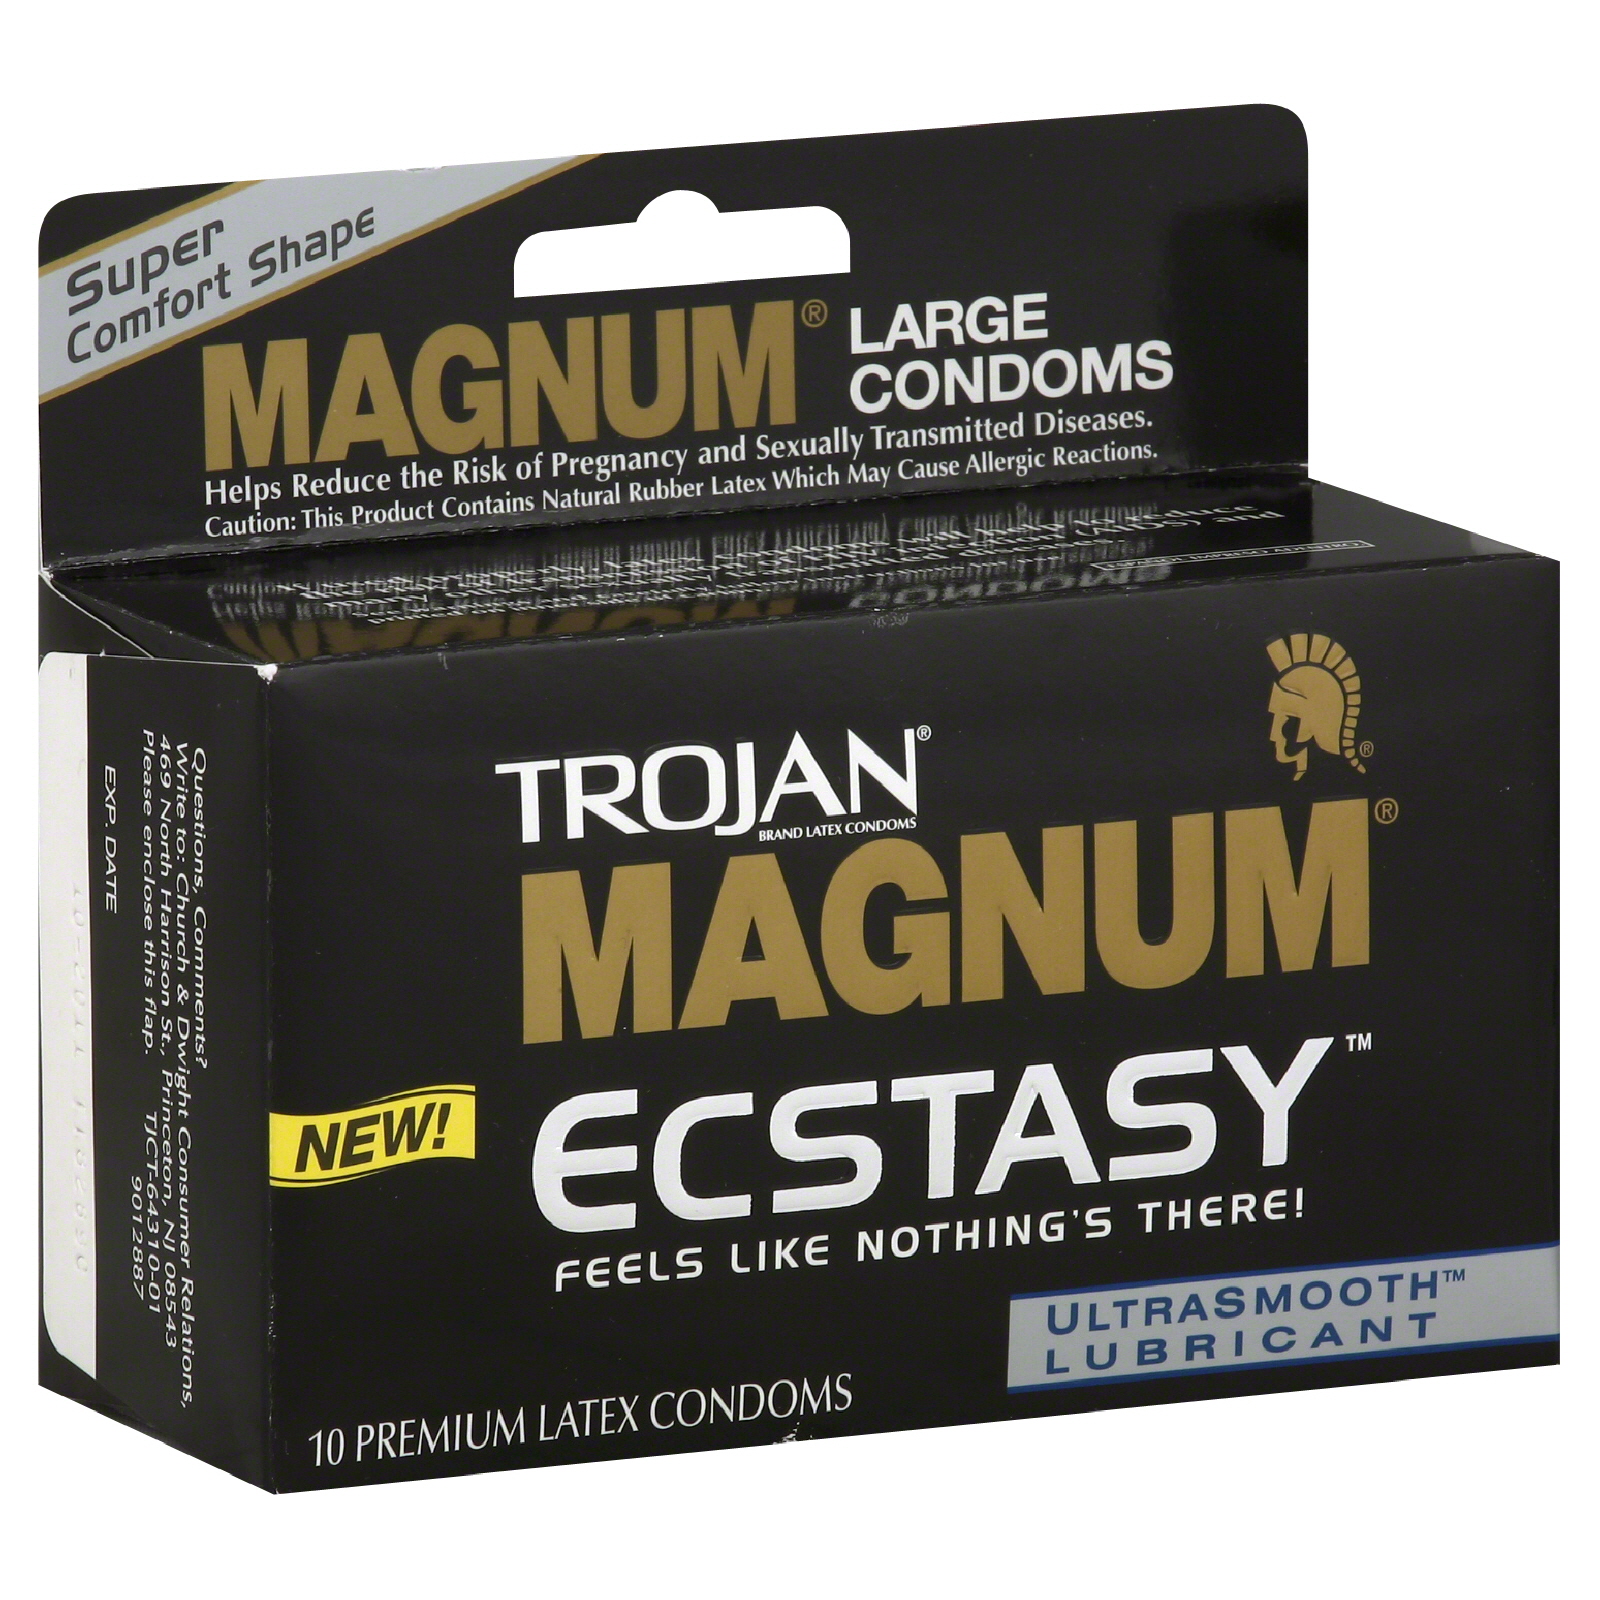 Trojan Magnum Ecstasy Condoms, Premium Latex, UltraSmooth Lubricant, Large, 10 condoms